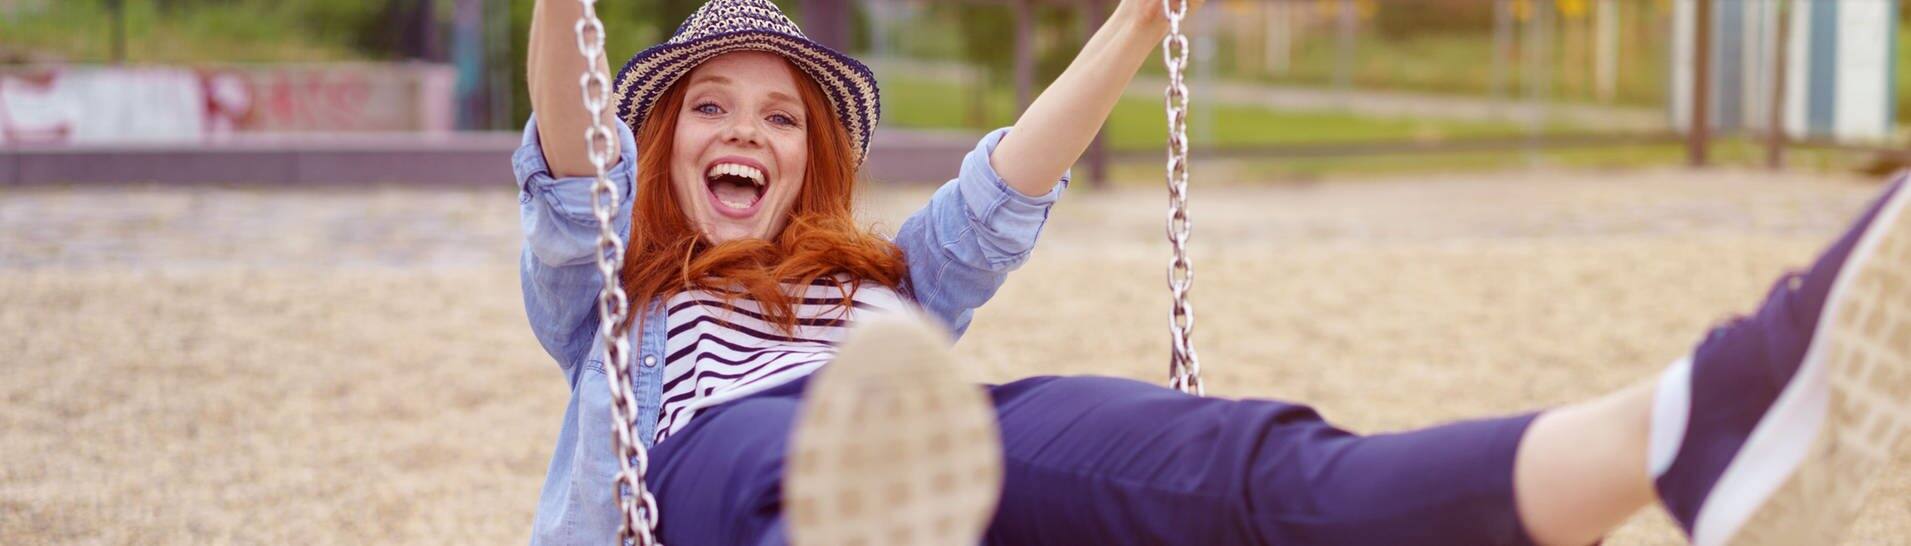 Junge Frau mit Hut schaukelt auf einer Schaukel, sie lacht und freut sich wie ein kleines Kind (Foto: Adobe Stock/contrastwerkstatt )